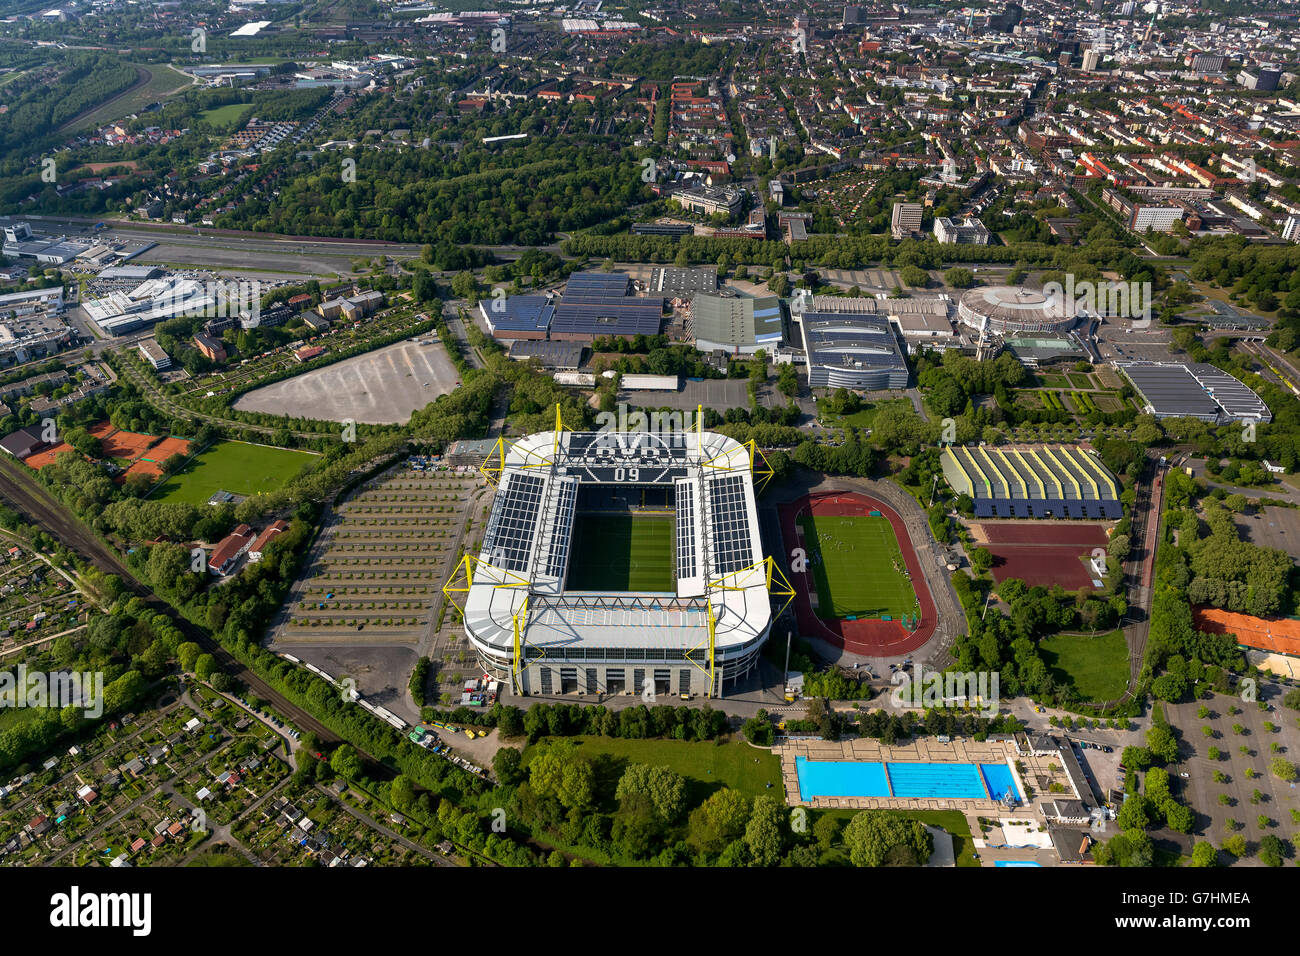 Vue aérienne, parc Signal Iduna, Westfalenstadion avec nouveau bureau Fanshop en construction, des panneaux solaires sur le toit du stade, Banque D'Images